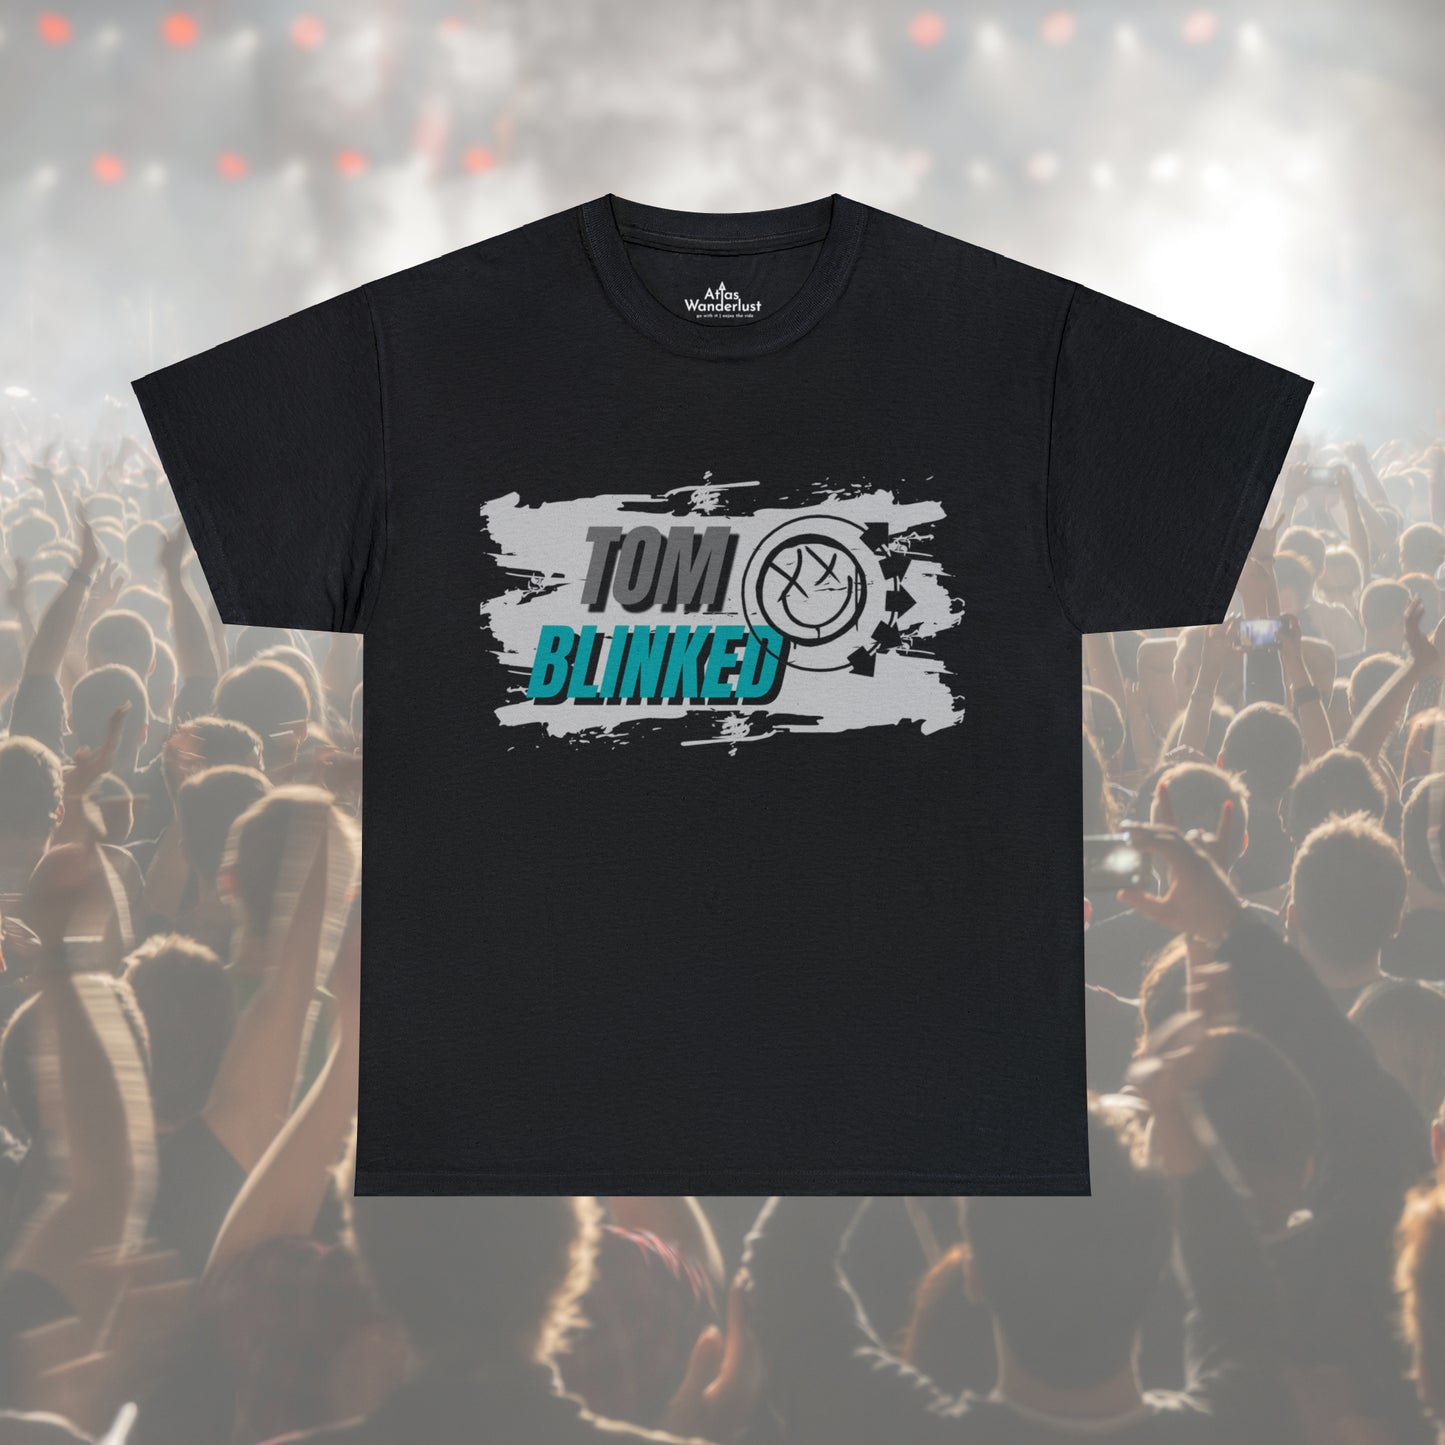 Blink 182 T-Shirt, Tom Delonge Blinked Tee